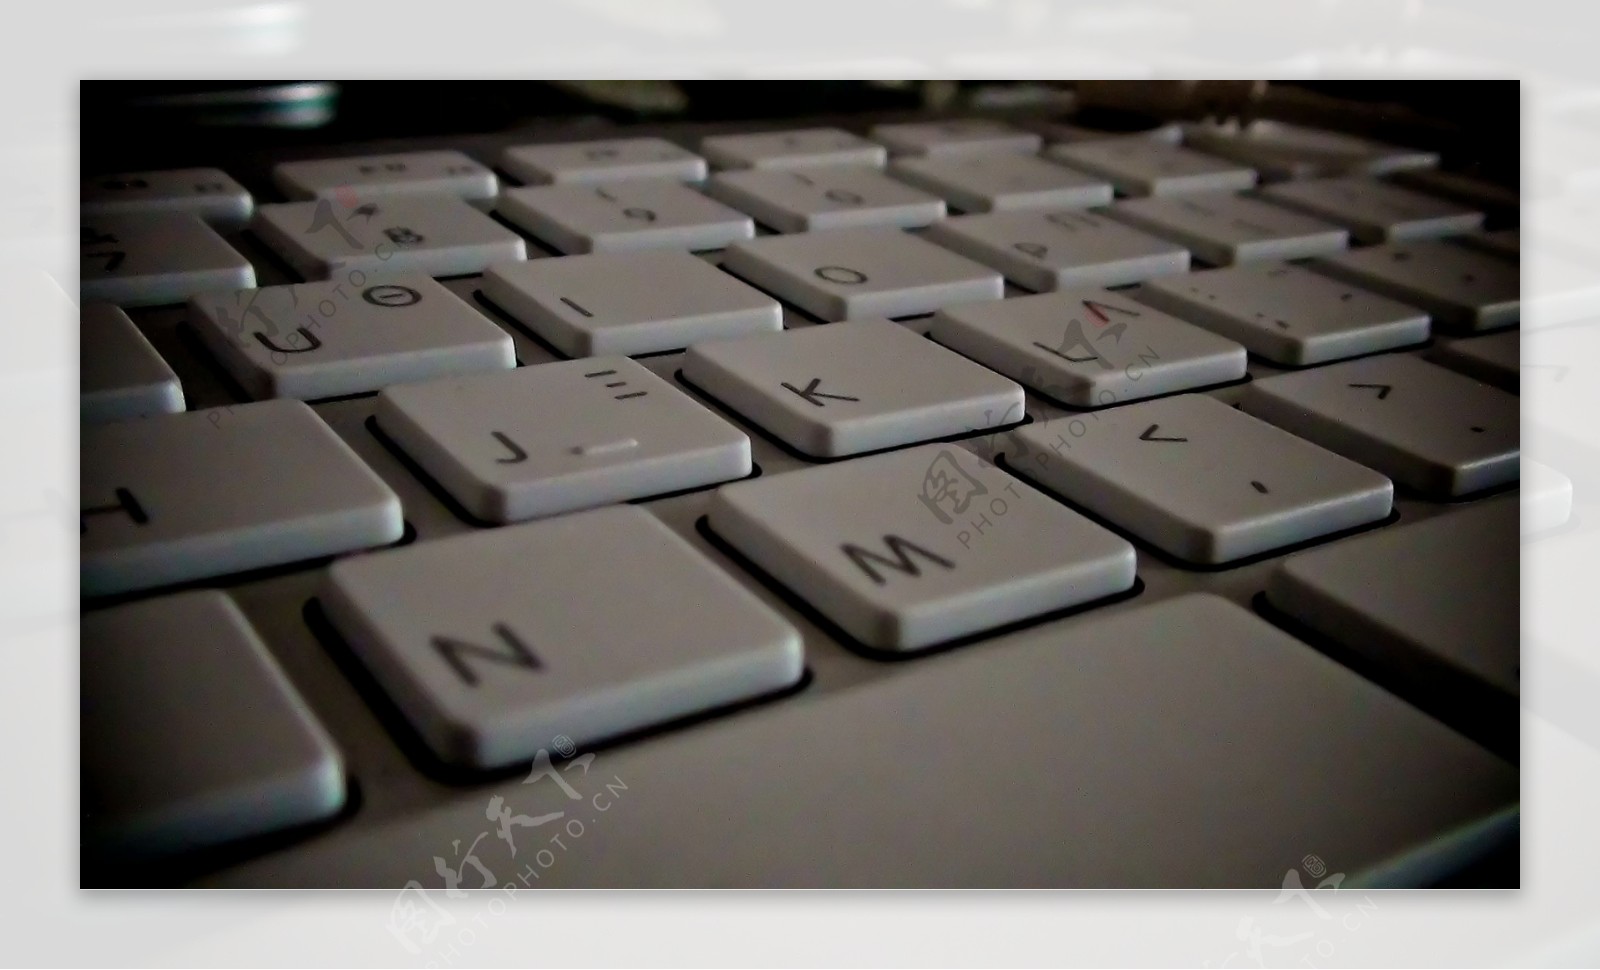 樱桃CHERRY 10.0键盘图赏 瞬息响应 轻薄美学_键鼠外设图赏_太平洋科技